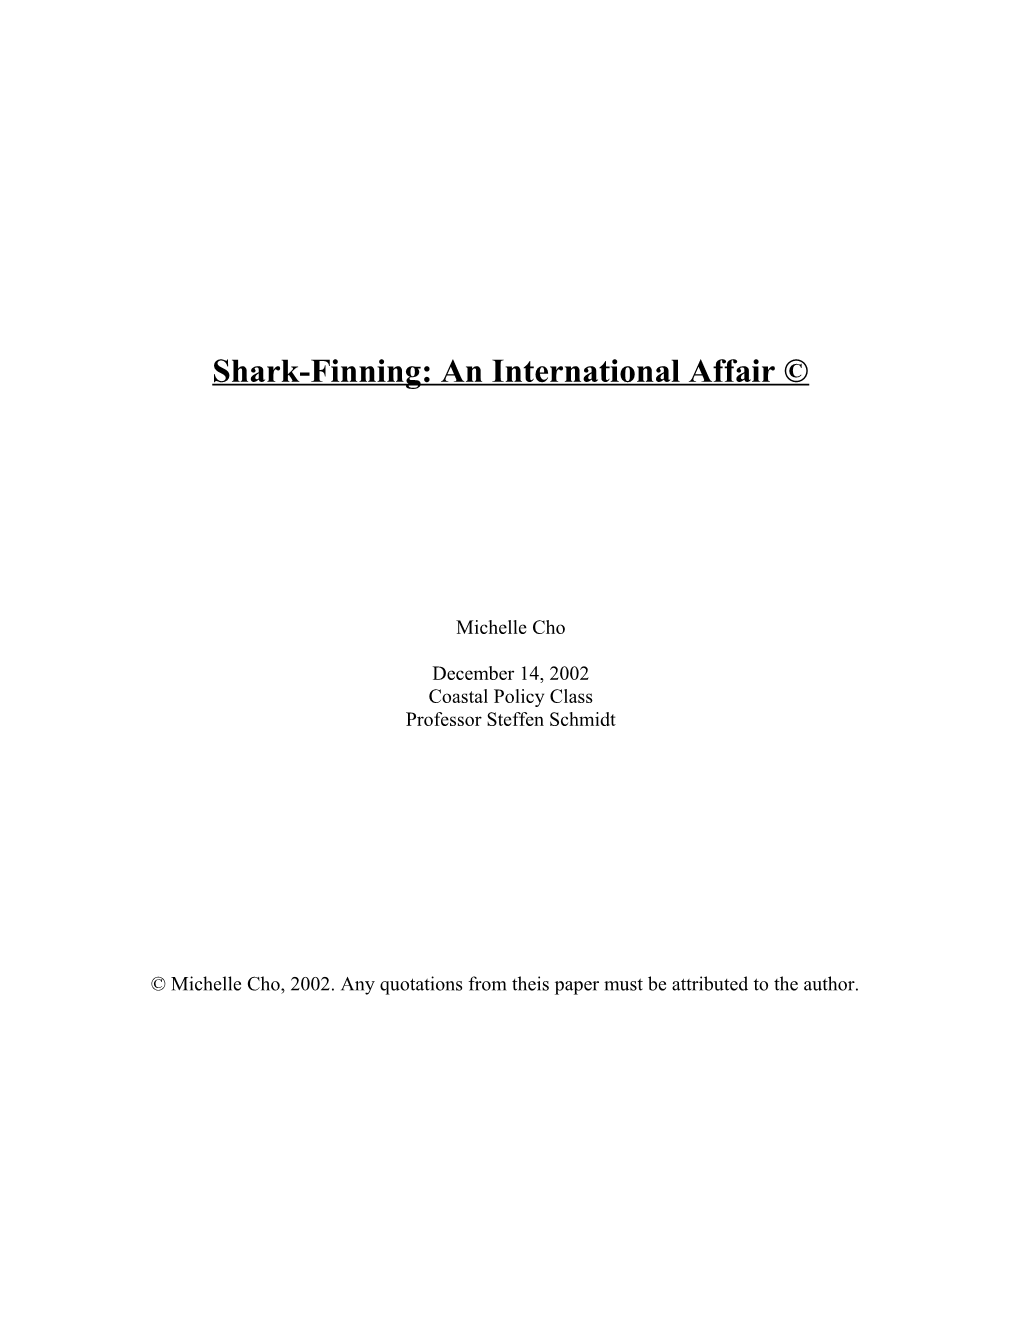 Shark-Finning: an International Affair